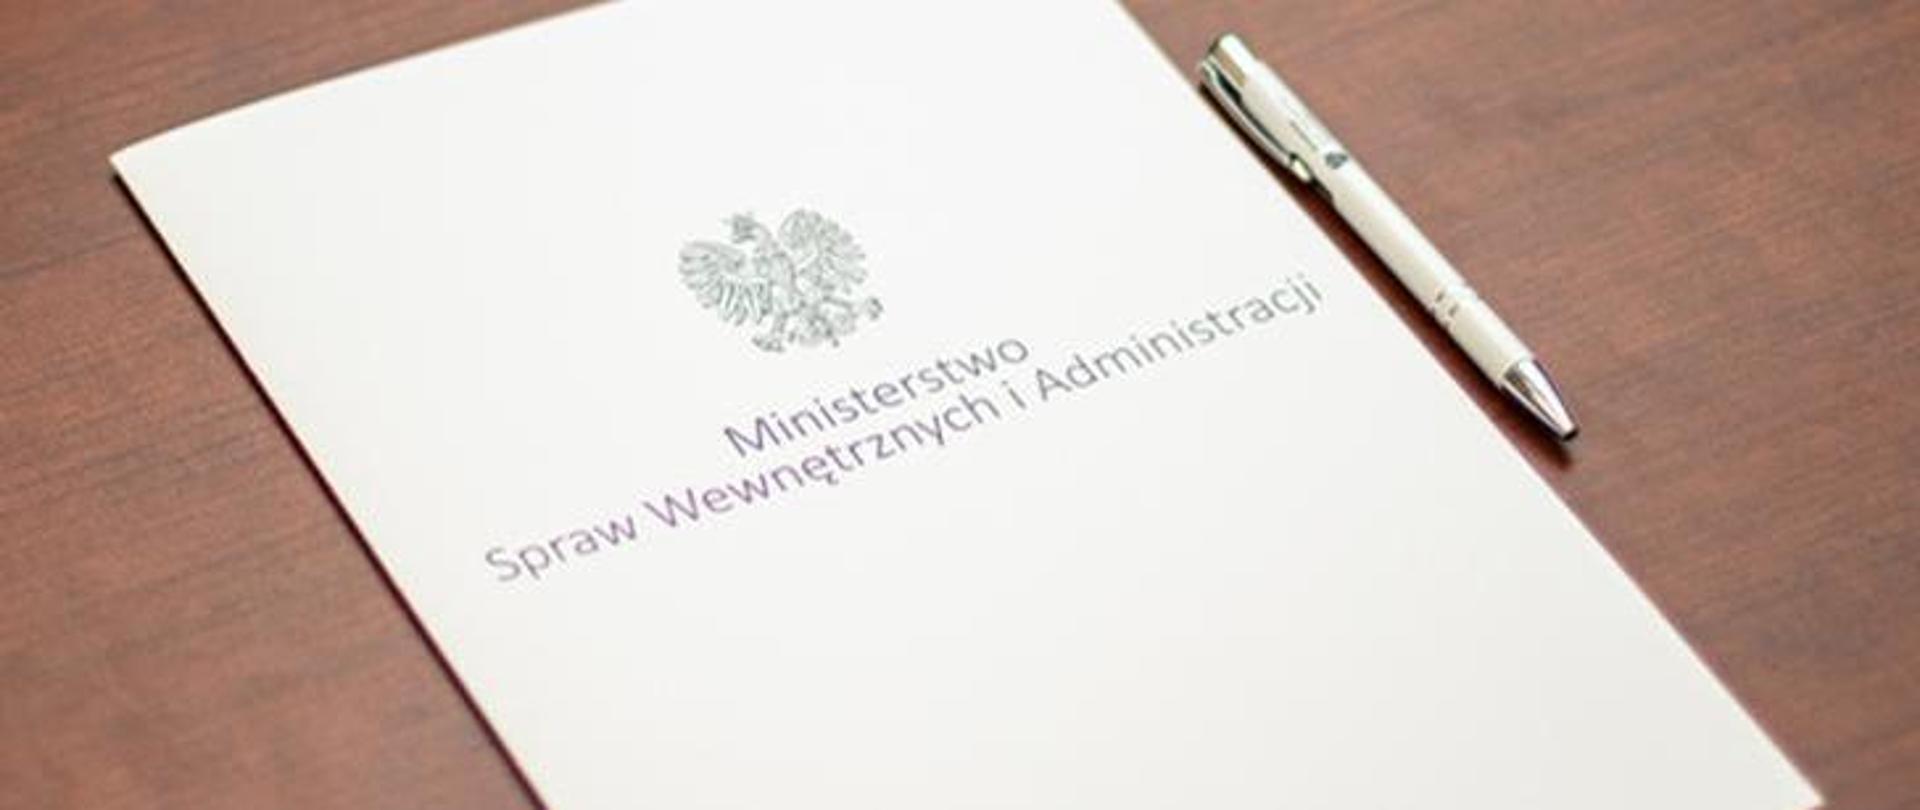 Zdjęcie przedstawia białą teczkę tekturową z napisem " Ministerstwo Spraw Wewnętrznych i Administracji", nad napisem znajduje się Orzeł Biały w koronie. Przy teczce leży biały długopis. 